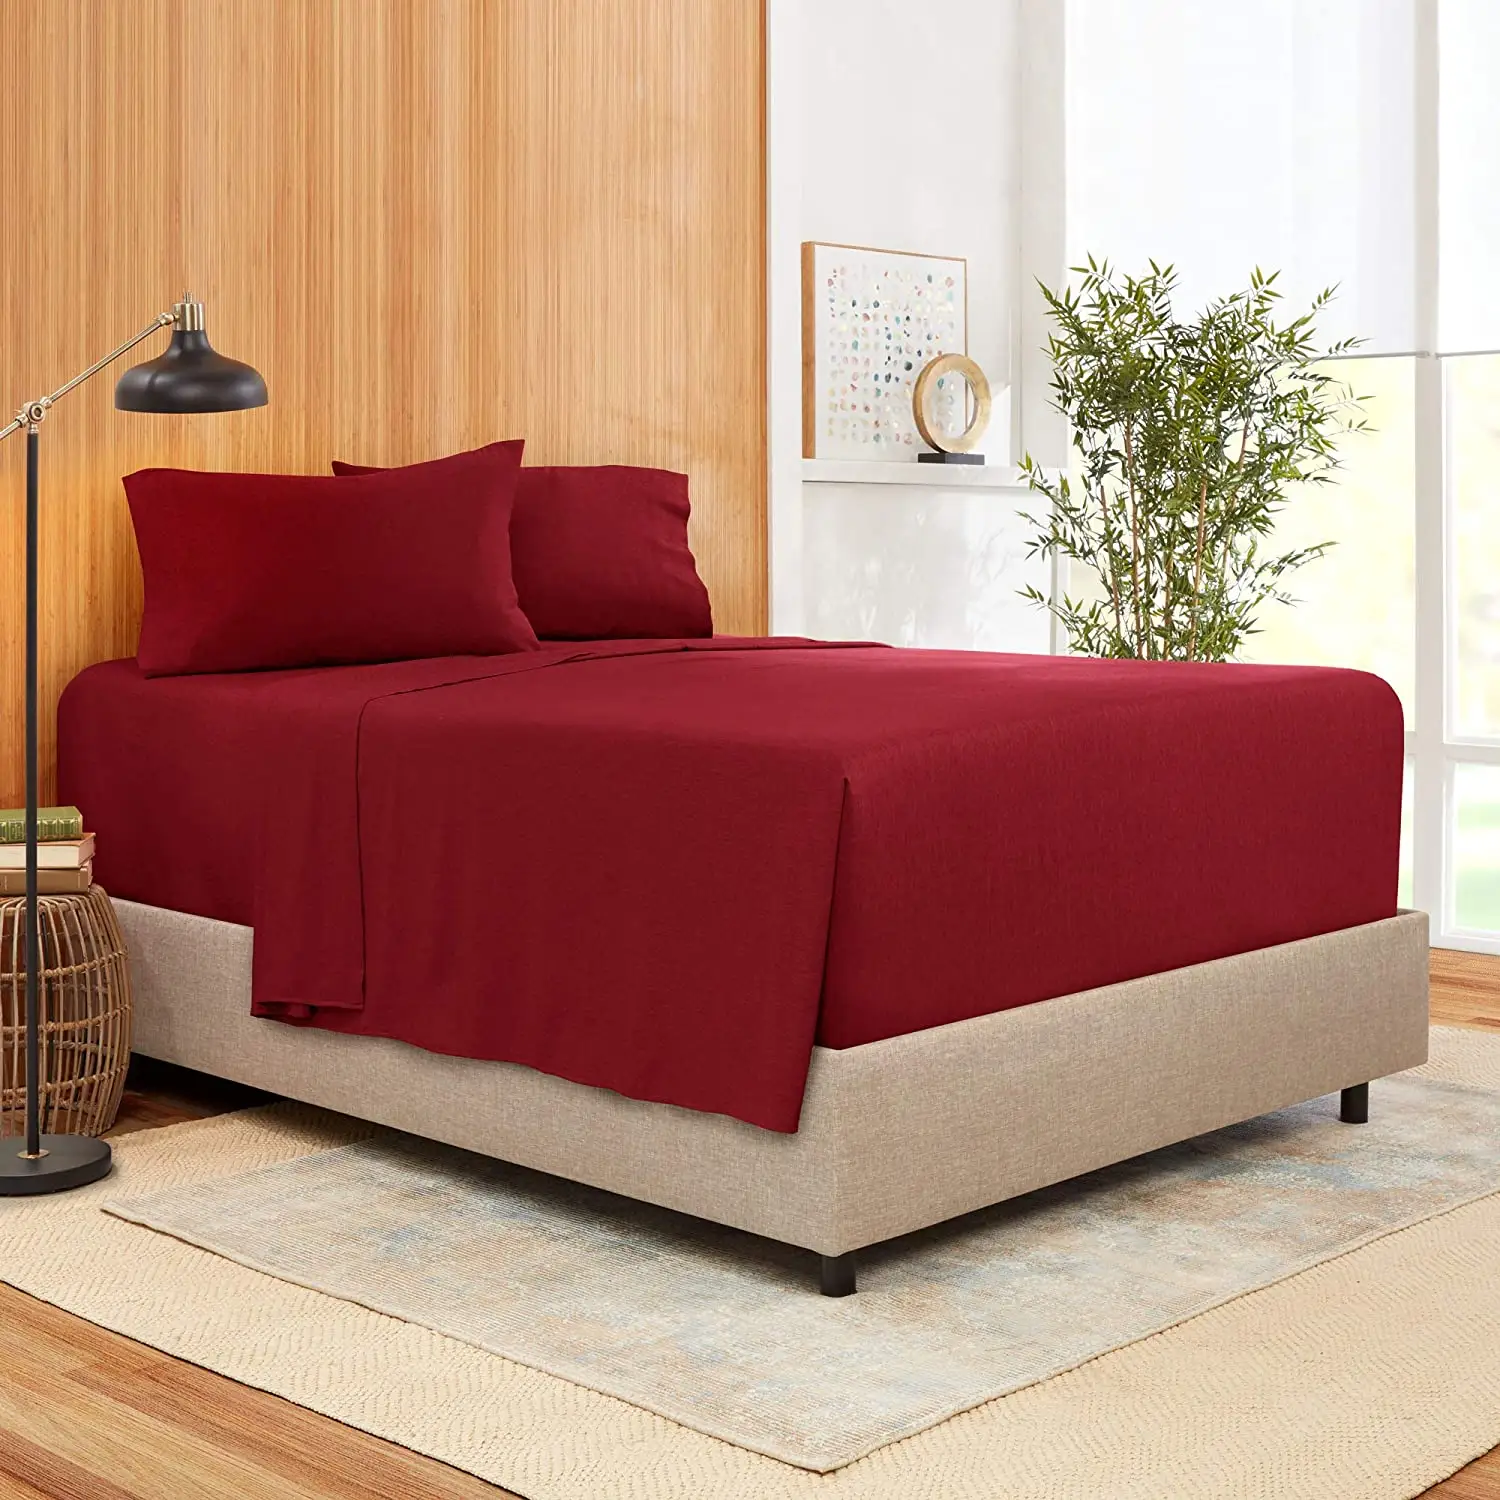 Sabanas थोक Juegos डे सबाना बिस्तर सेट 3 डी नवजात चादरें ऑनलाइन राजा रानी फिट बिस्तर शीट डिजाइनर बिस्तर सेट